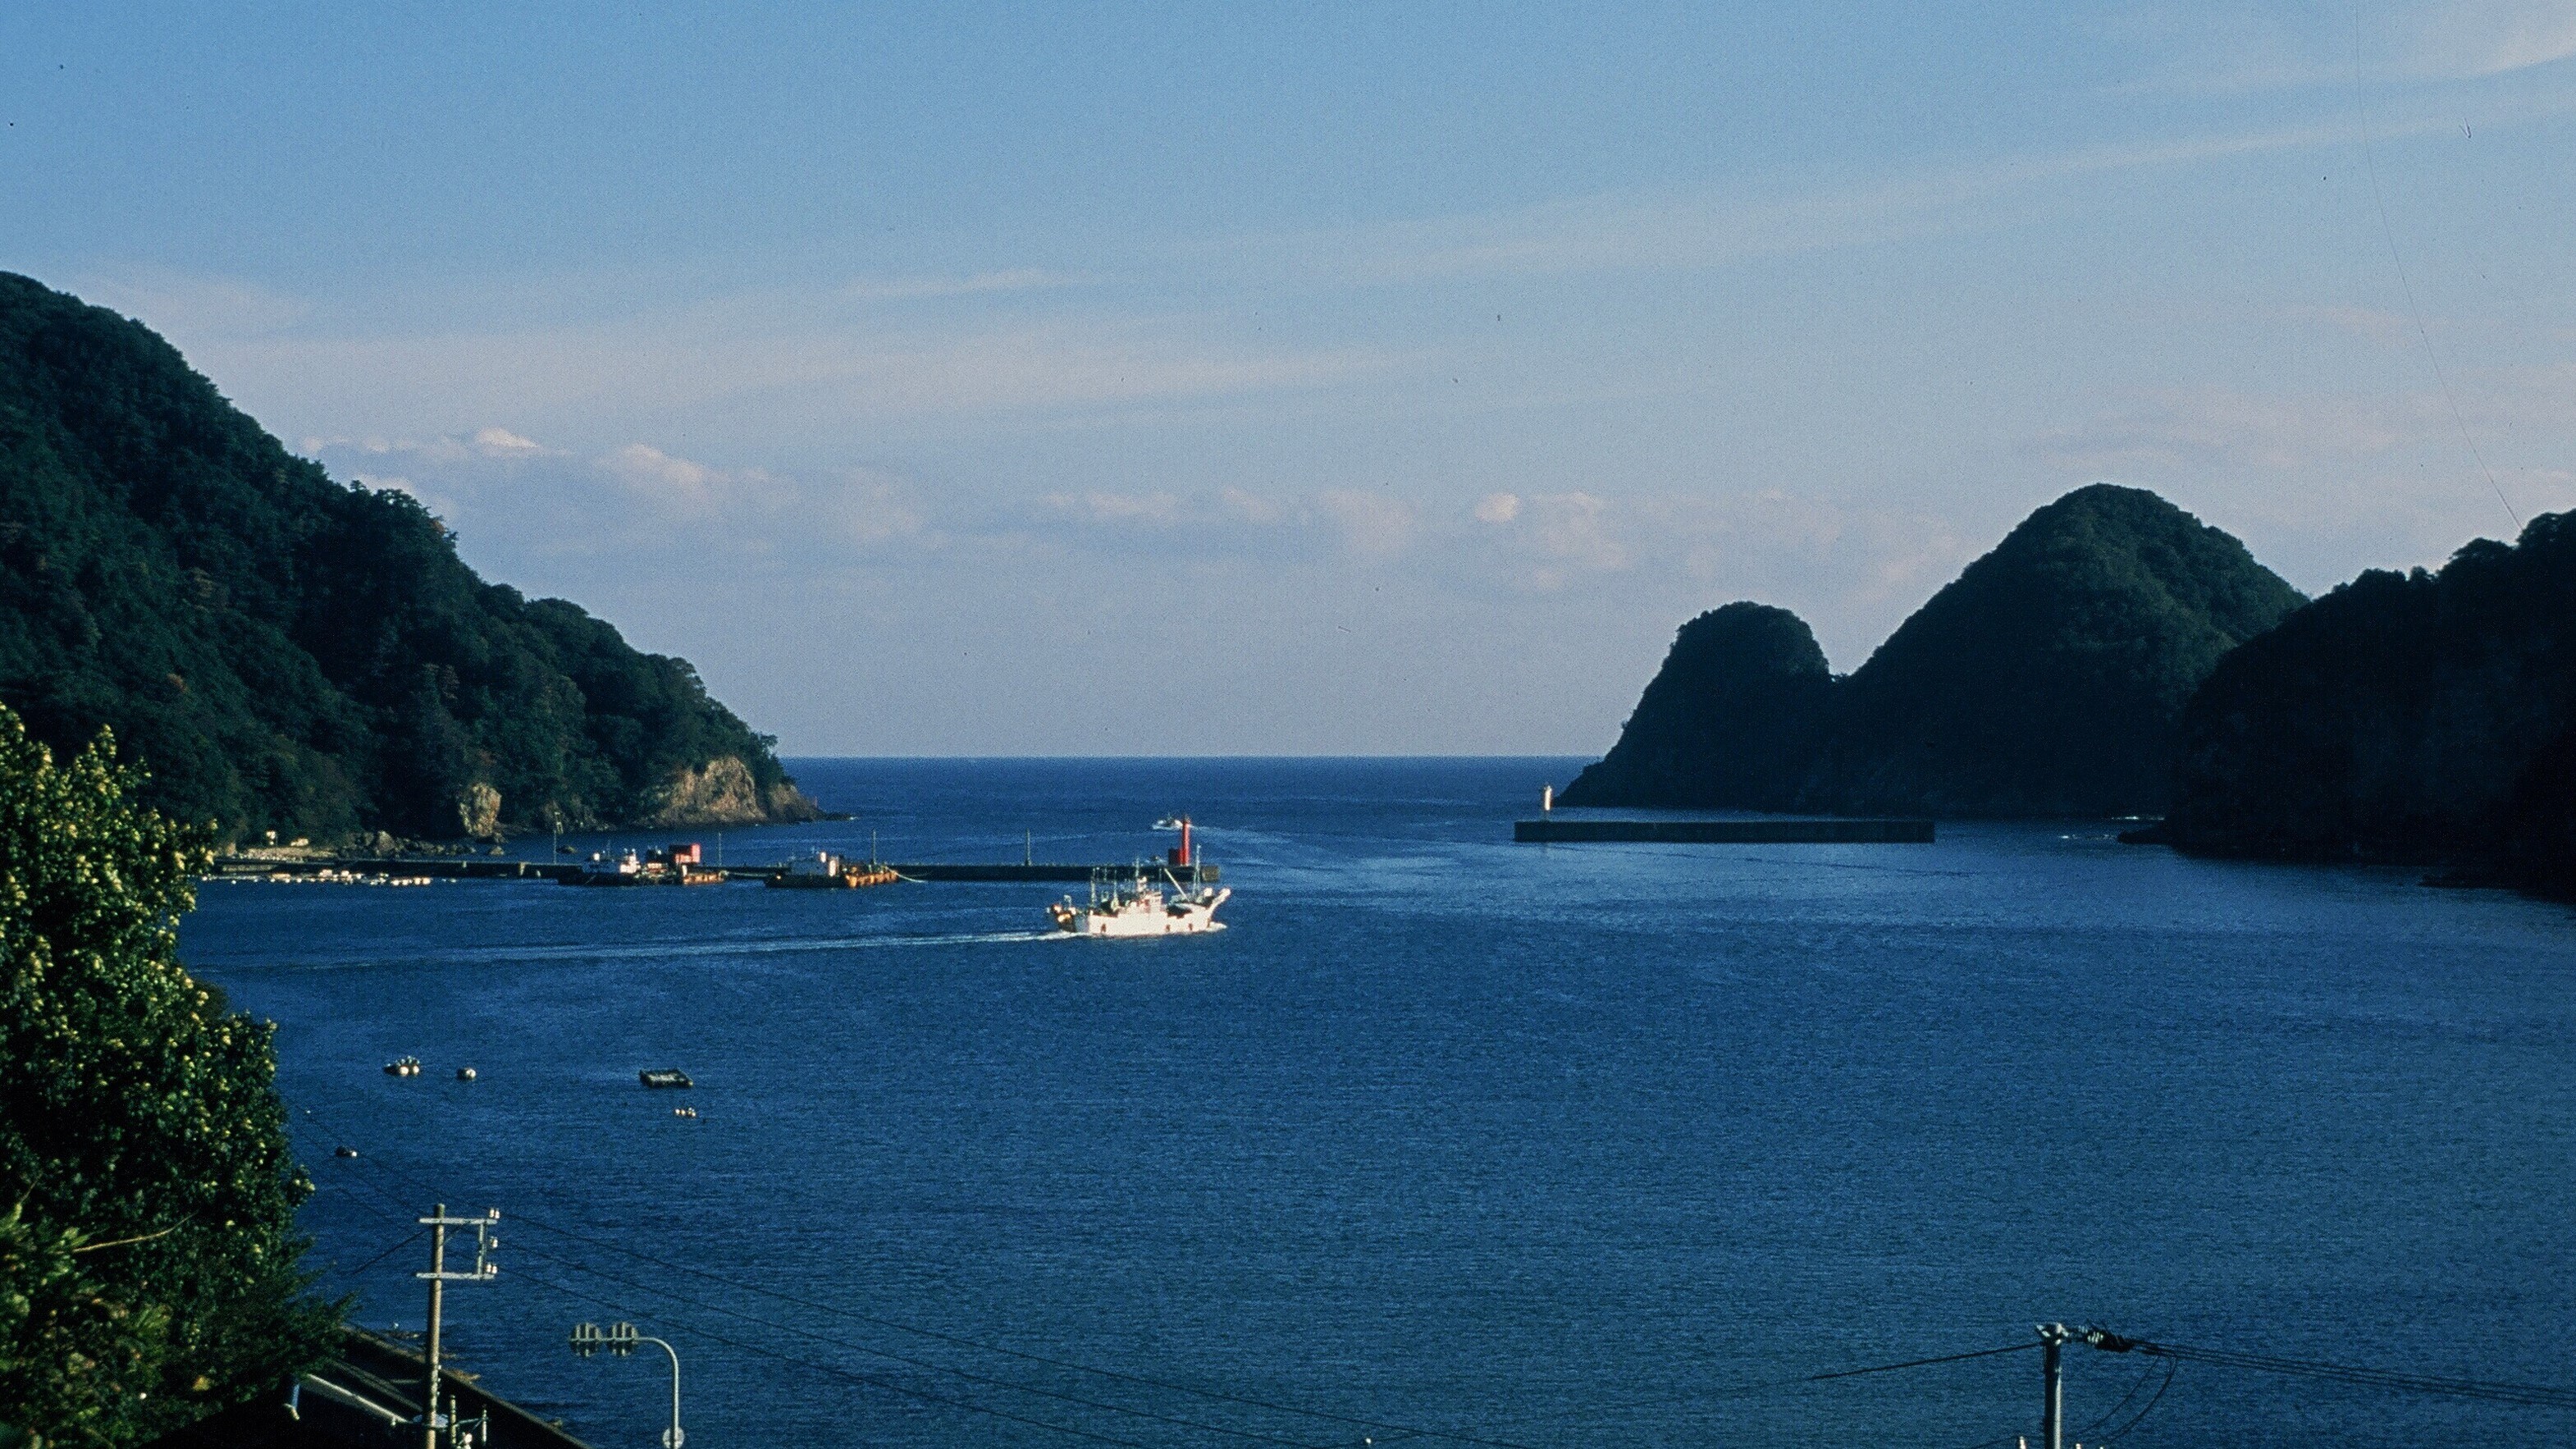 Anda dapat melihat "Teluk Shibayama dan Pelabuhan Perikanan Shibayama" dari kamar di sisi laut.